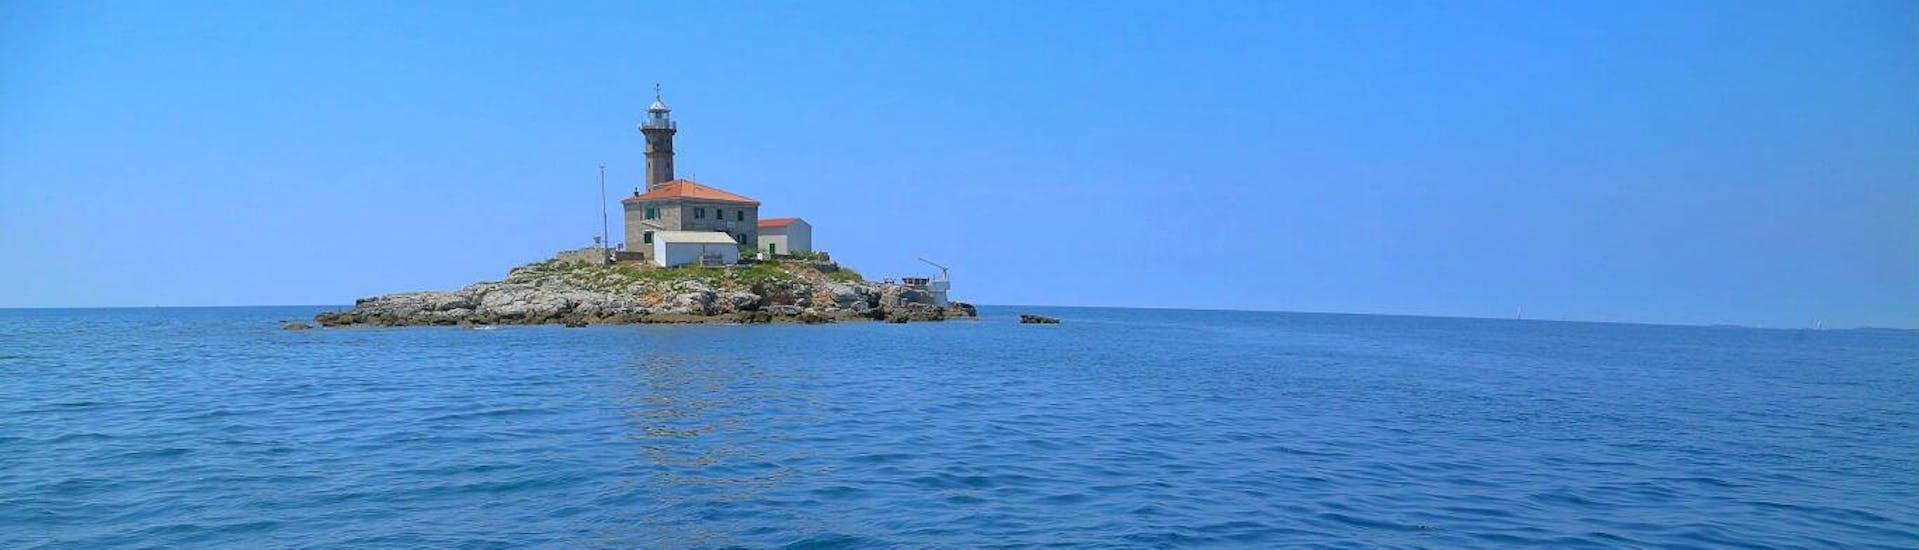 Bild einer Insel während des Scuba Diving - Geführte Bootstauchgänge zu Inseln in der Nähe von Rovinj.